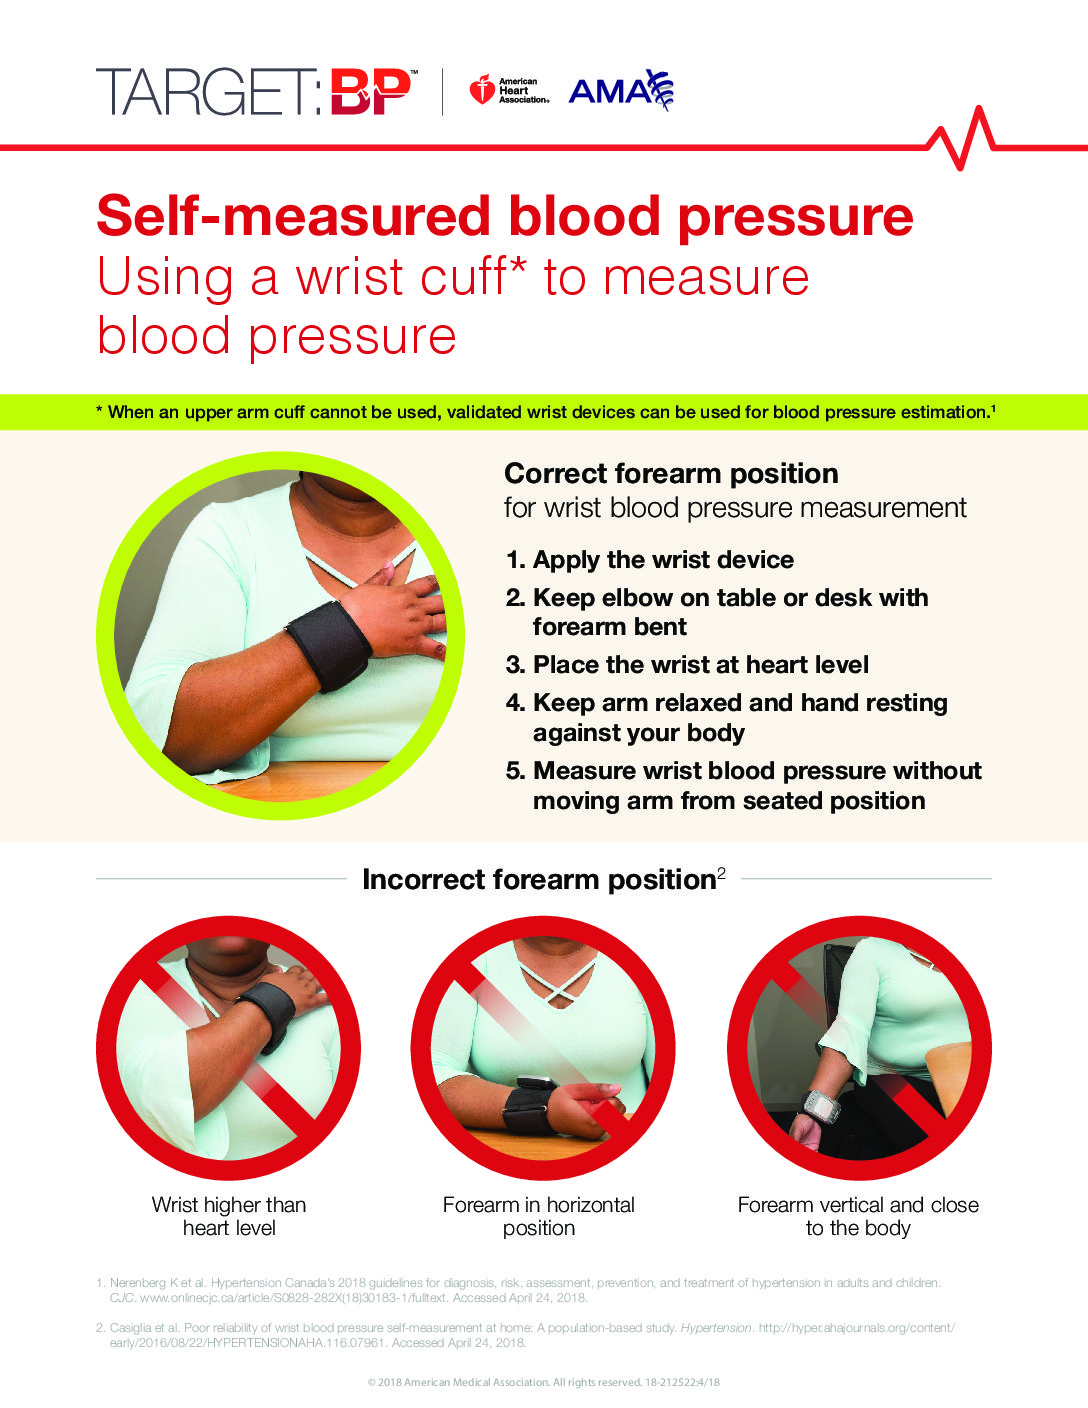 Using a Wrist Cuff to Measure Blood Pressure